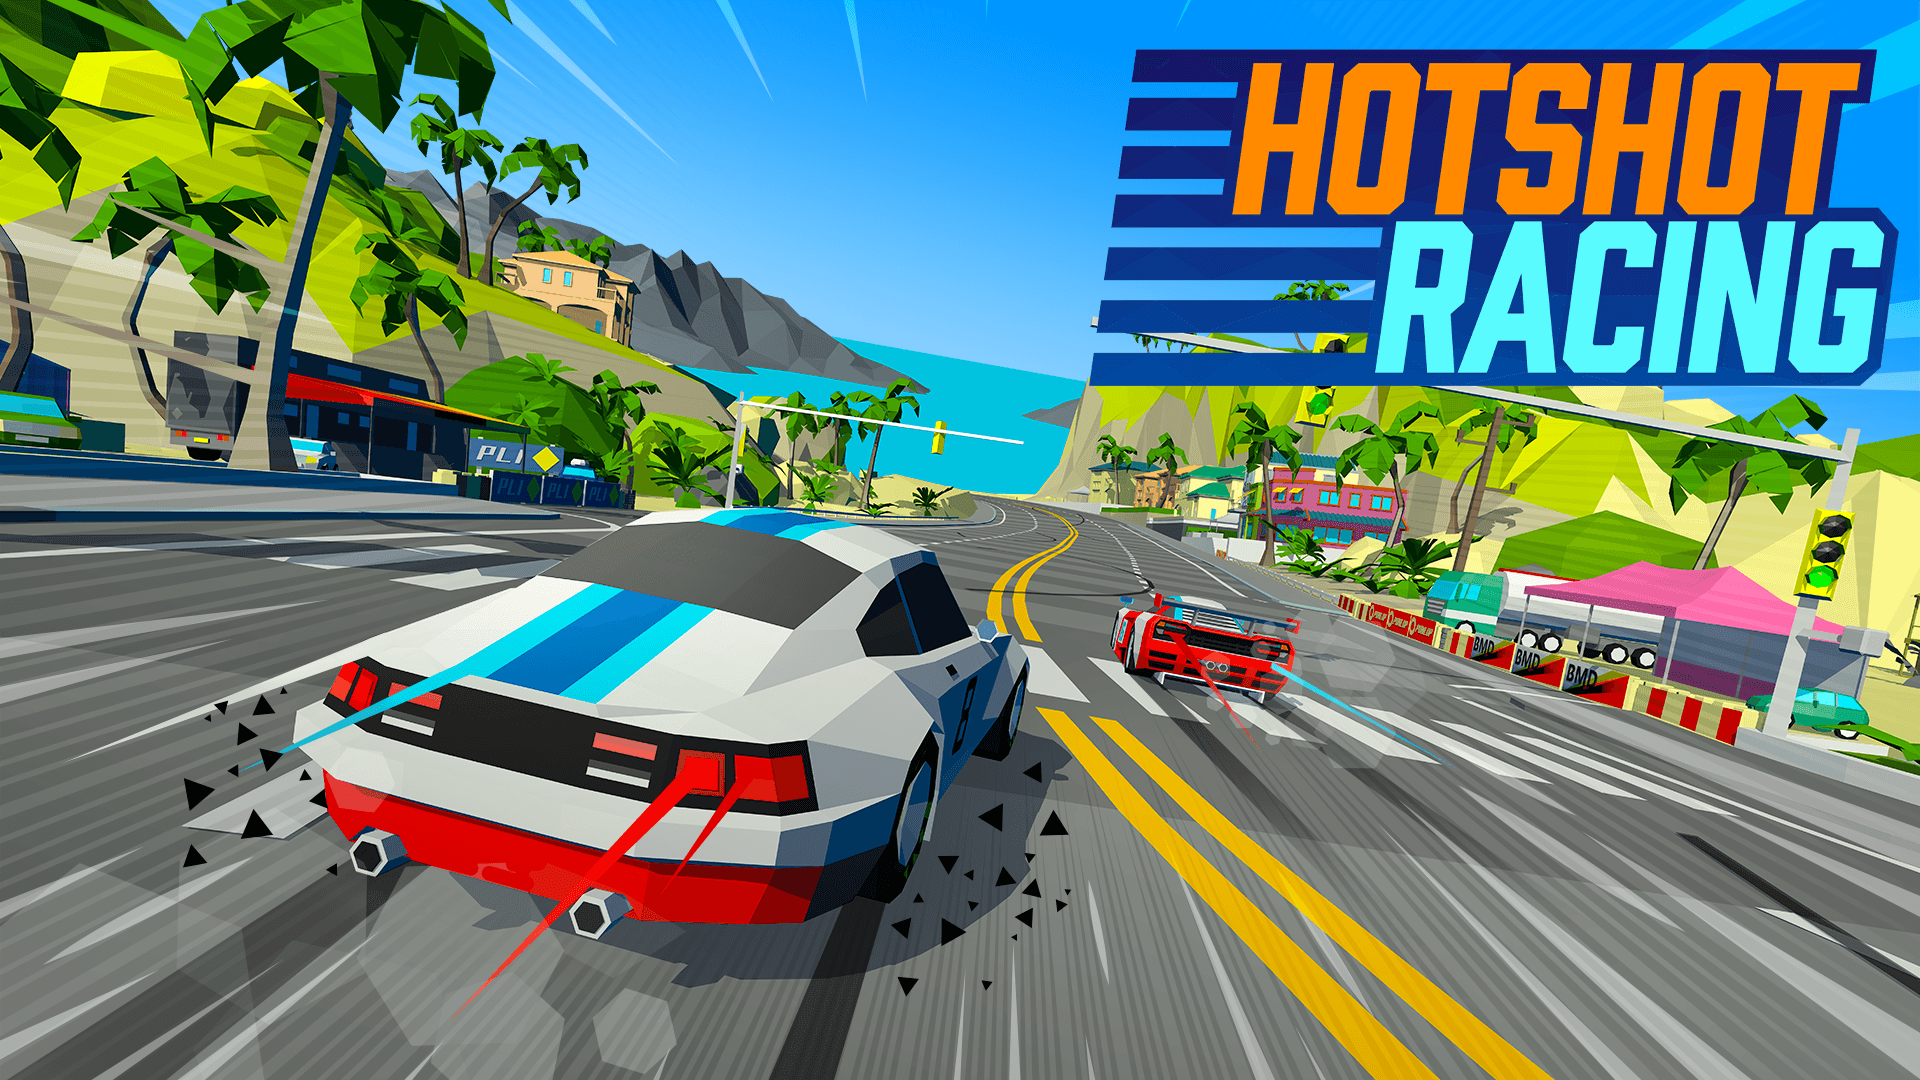 Review: Hotshot Racing - PS4